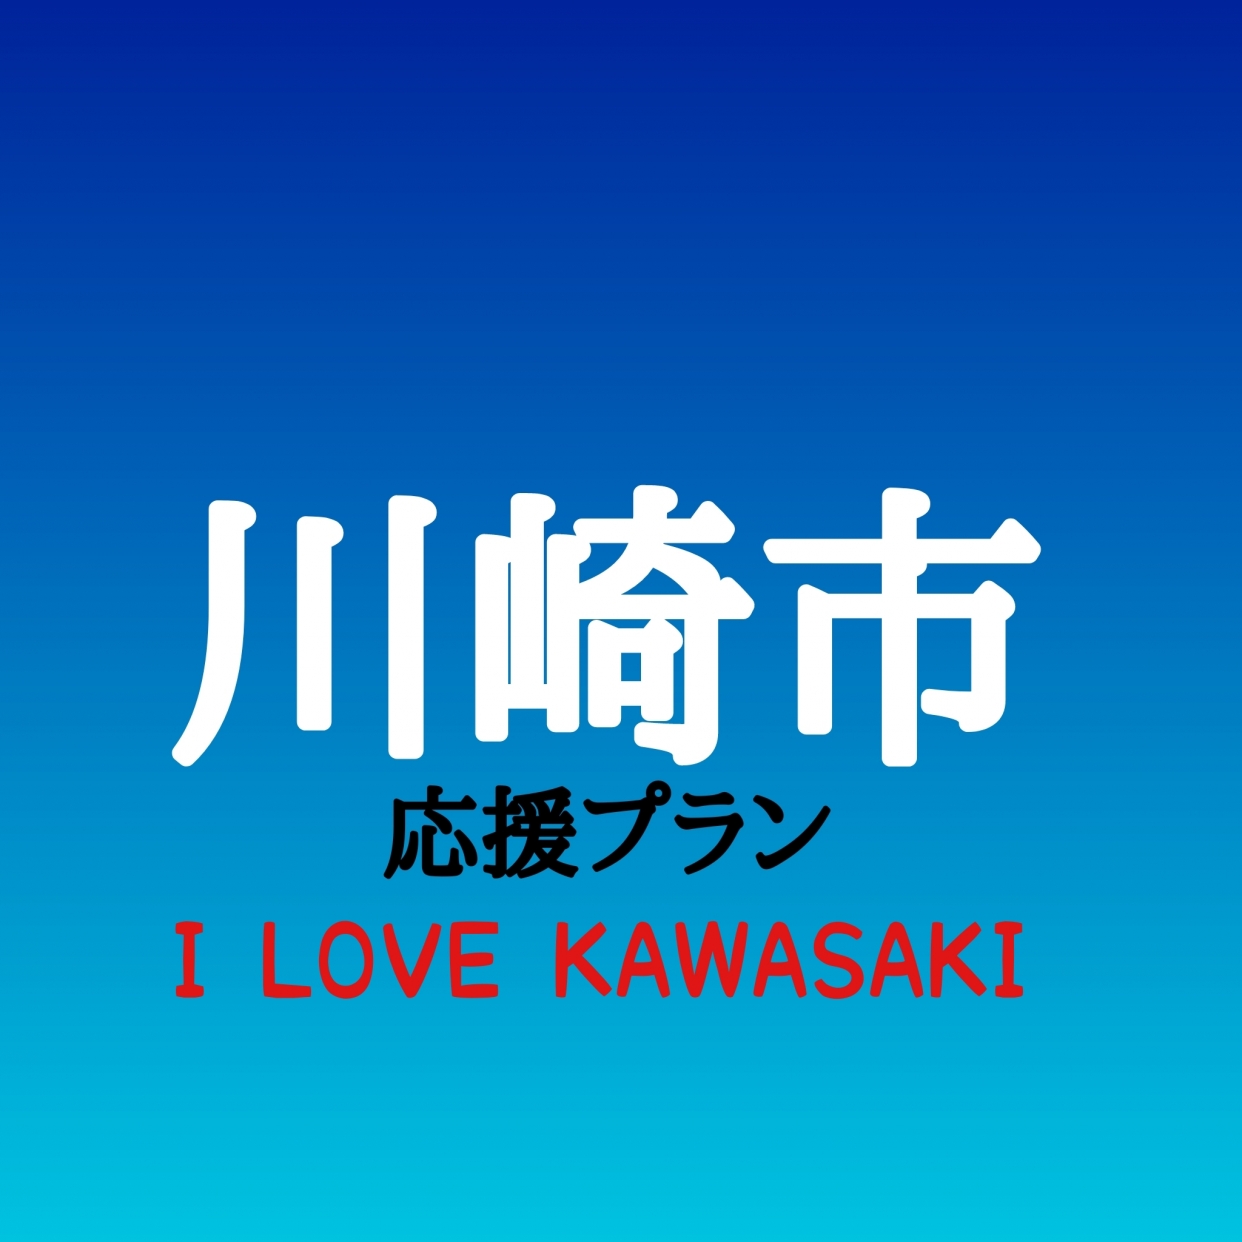 【I LOVE KAWASAKI】川崎市応援プラン 22:00-12:00